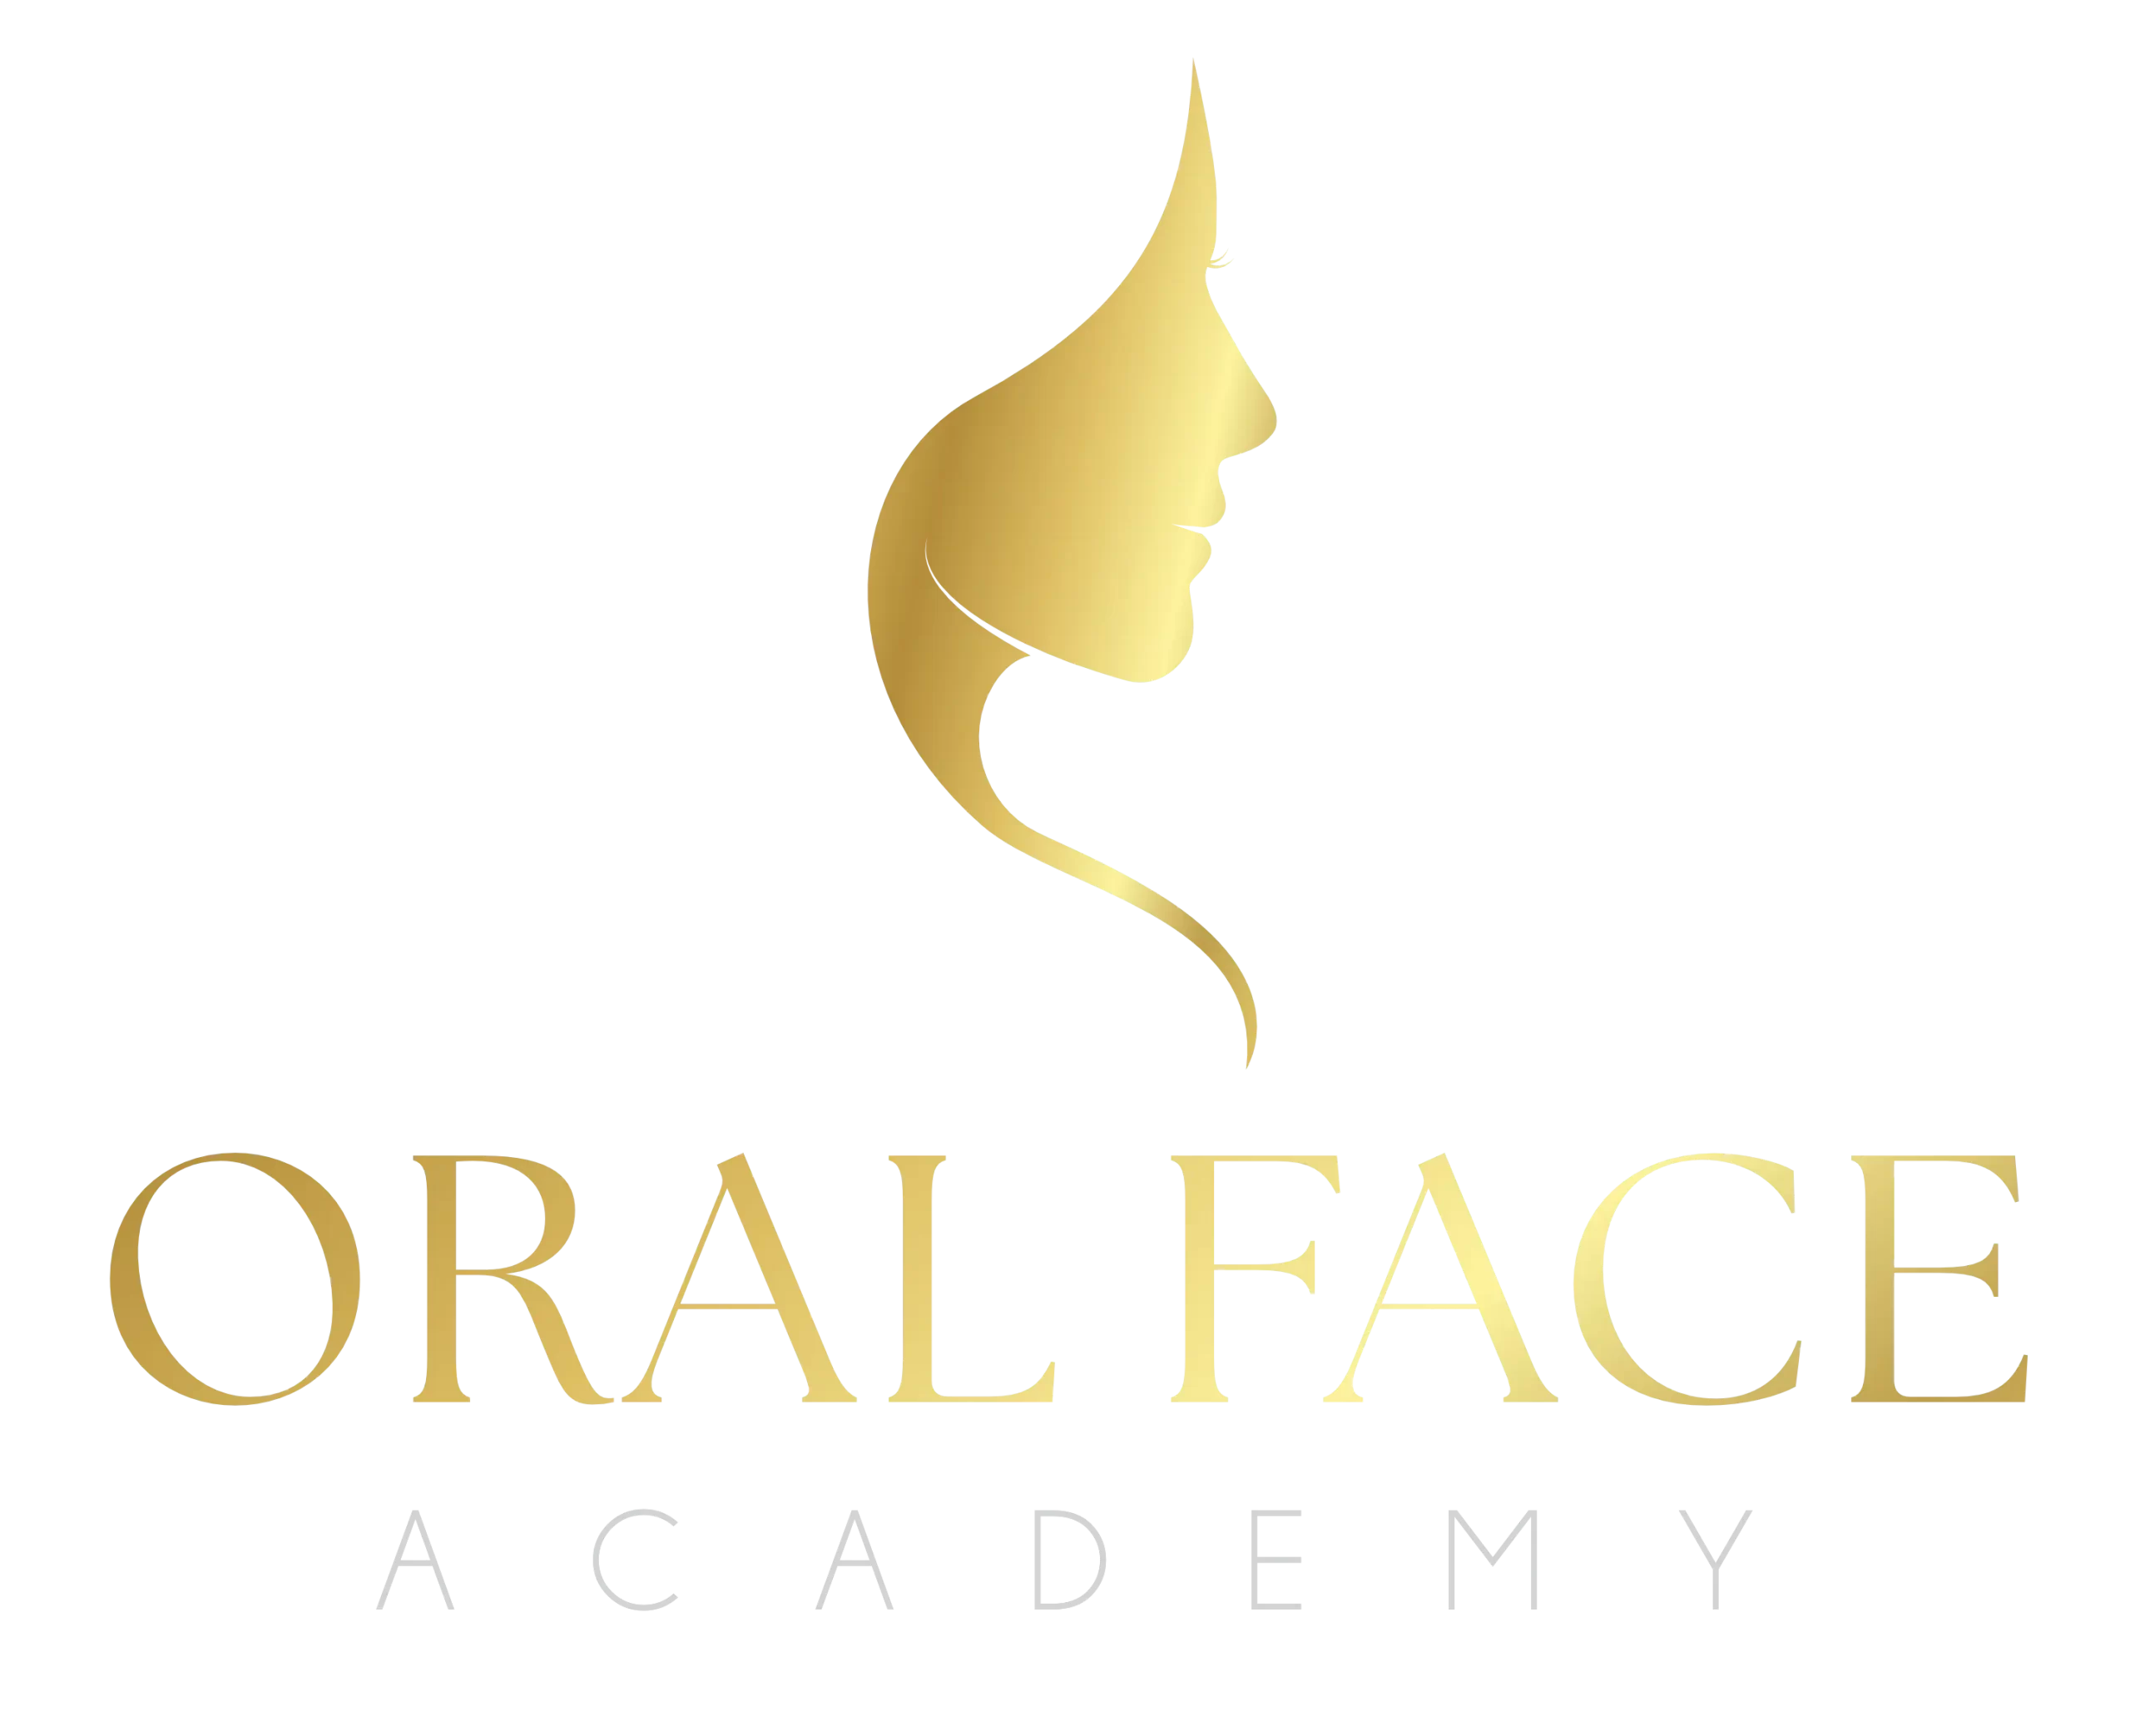 novo-logo-oral-face-academy